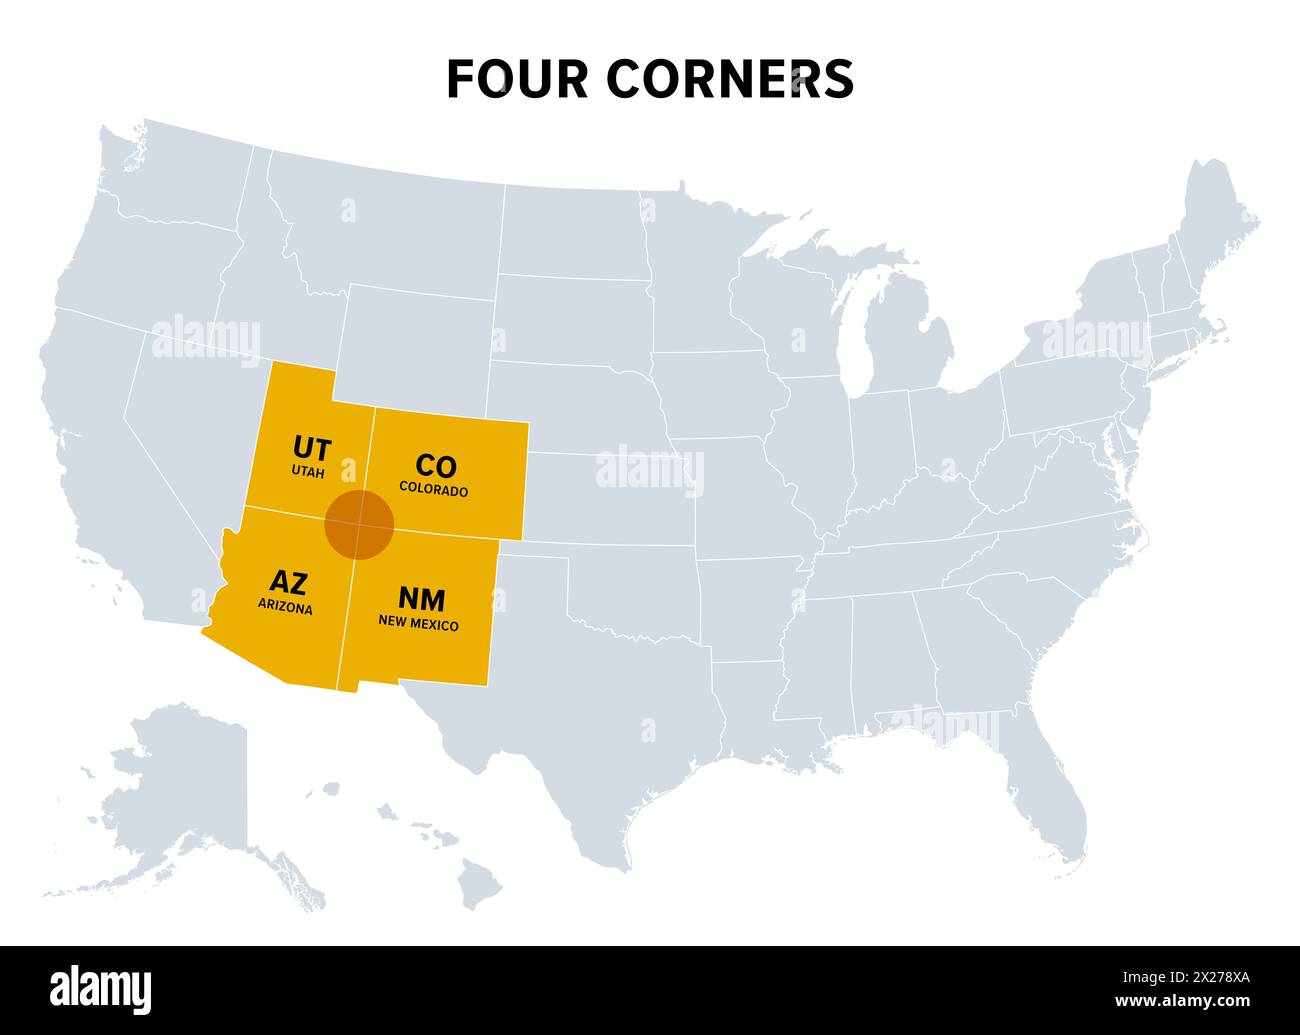 Four Corners, une région du sud-ouest des États-Unis, carte politique. Seule région des États-Unis où quatre états partagent un point frontière. Banque D'Images